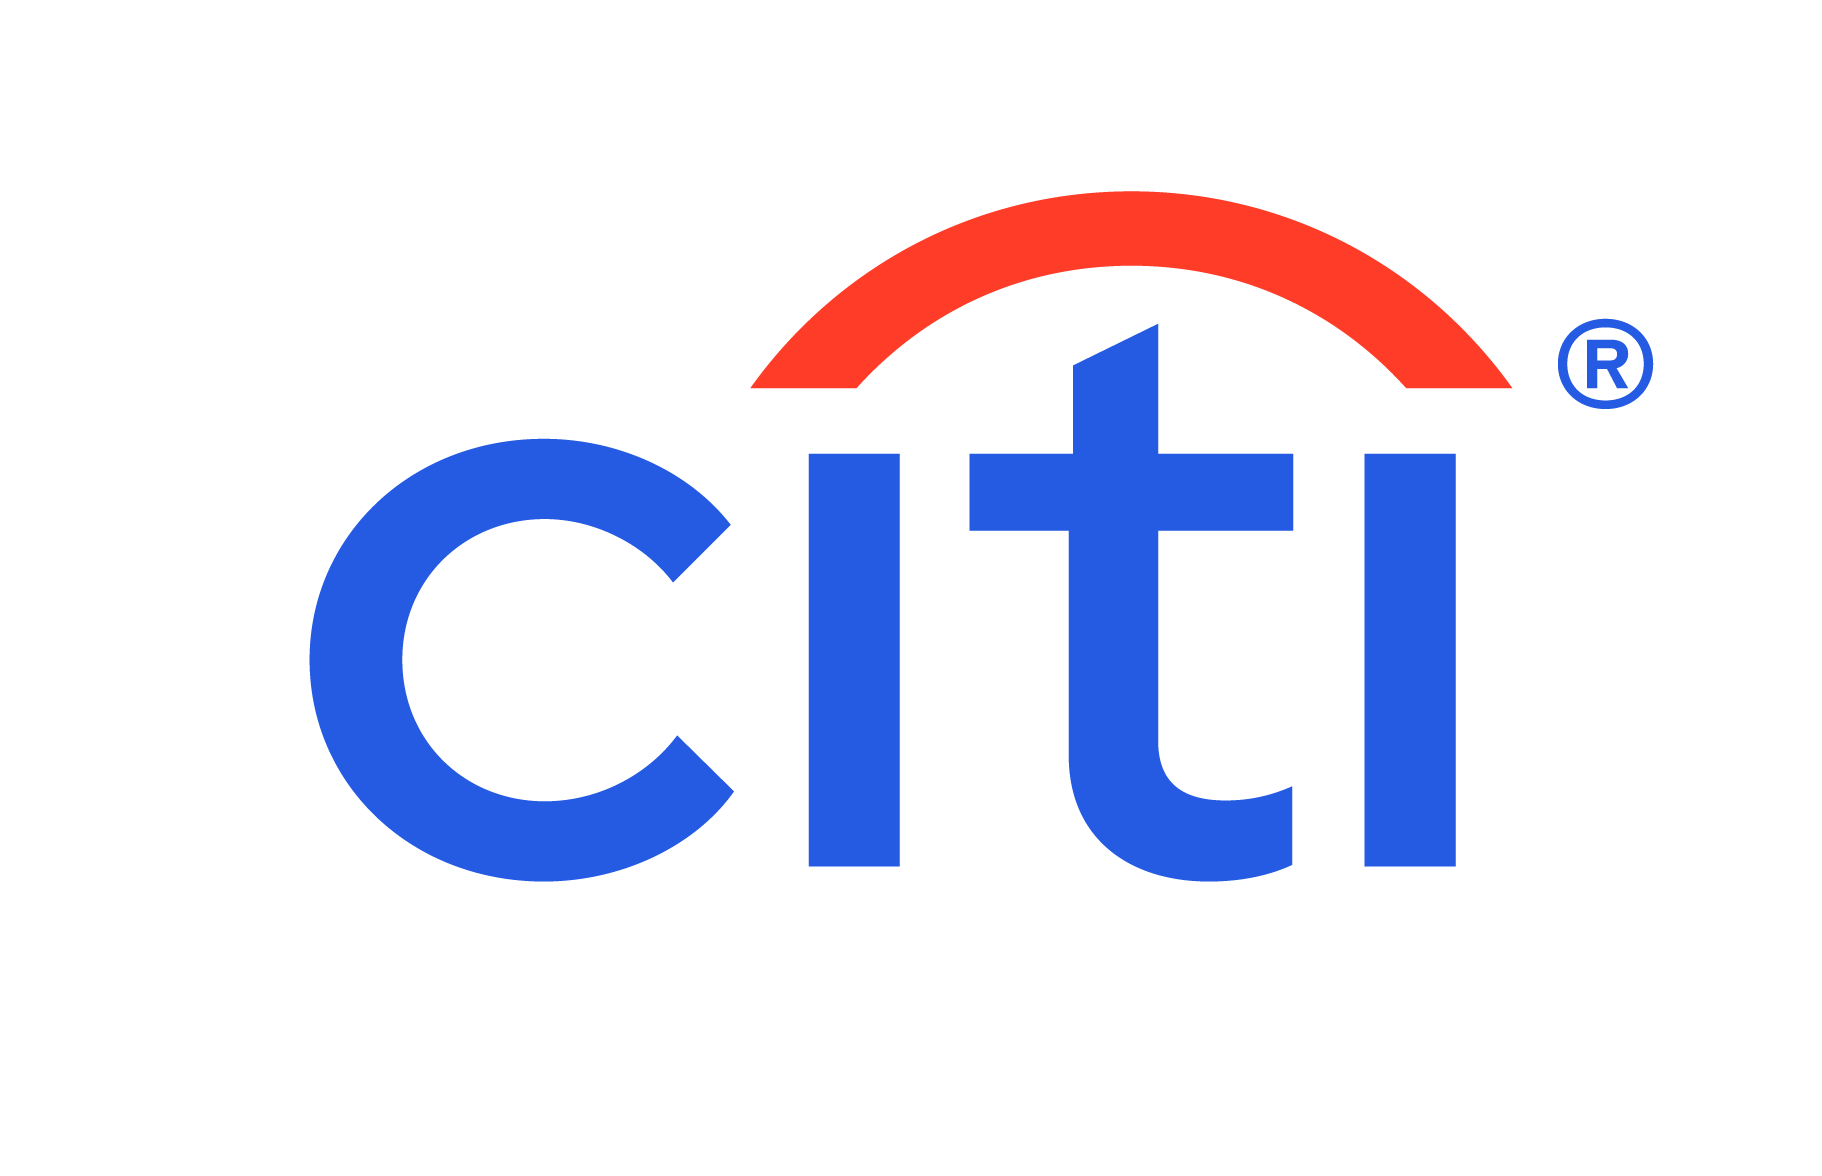 Citi® Accelerate Savings